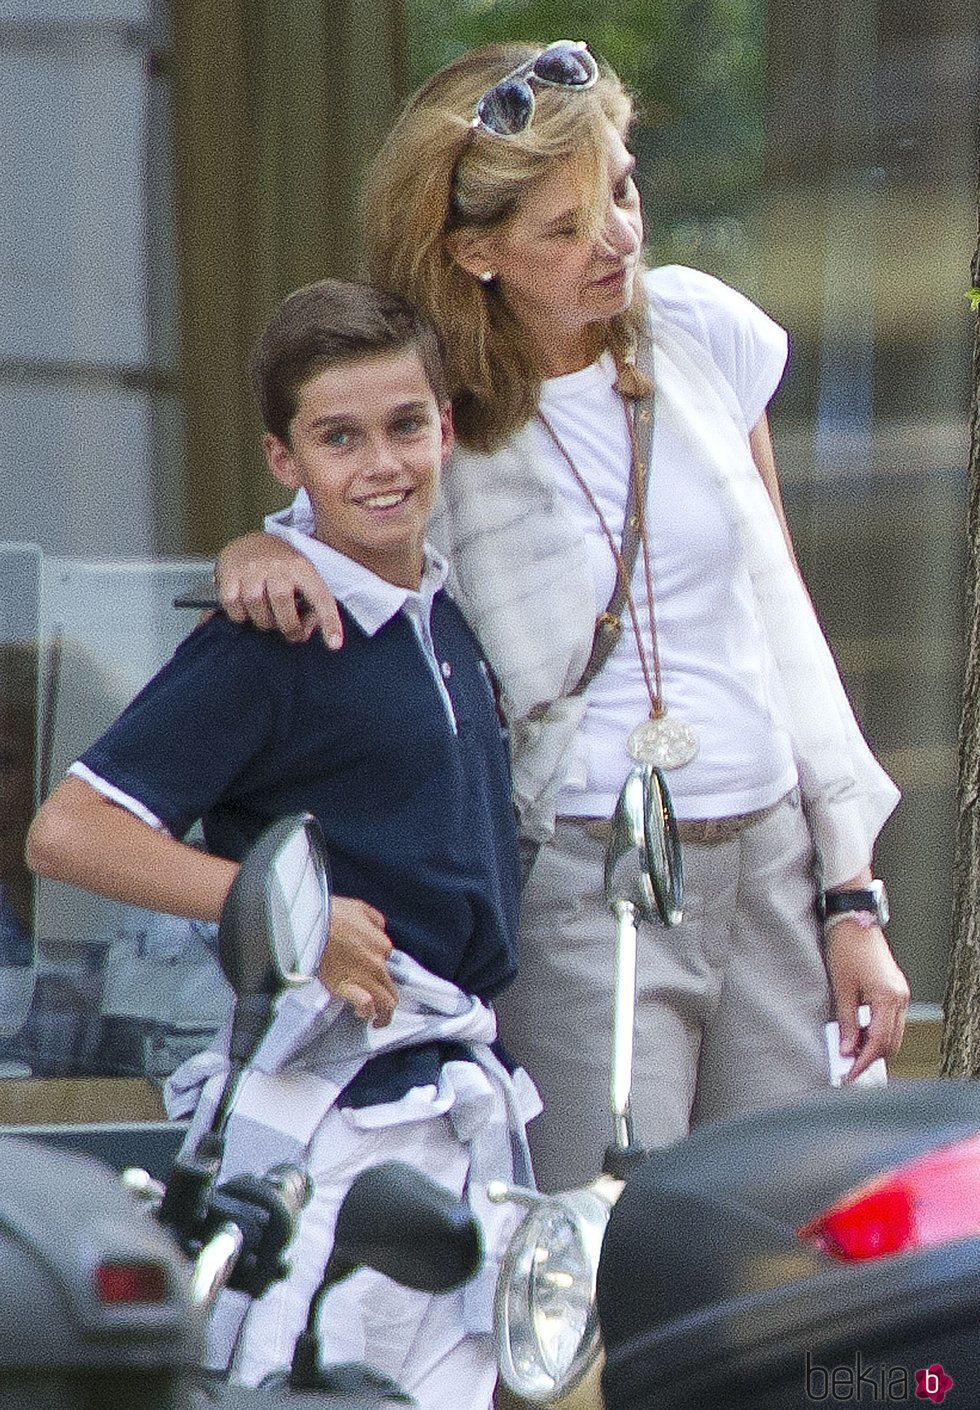 La Infanta Cristina y su hijo Pablo Urdangarin en Ginebra